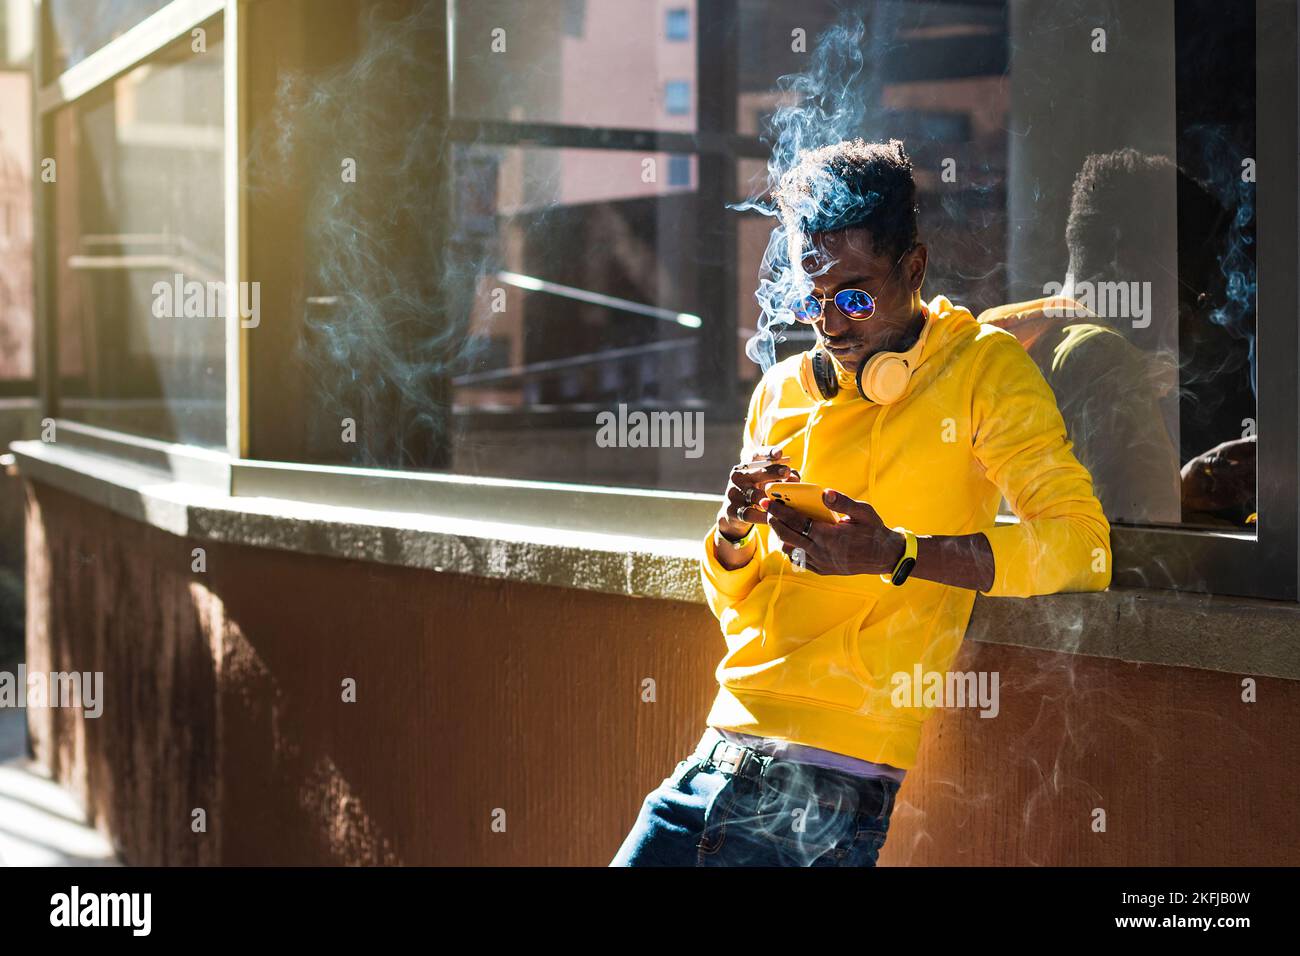 Un jeune Africain vêtu d'un sweat-shirt jaune, d'un Jean bleu et de lunettes de soleil se penche sur un rebord de fenêtre regardant son téléphone portable tout en tenant un c Banque D'Images